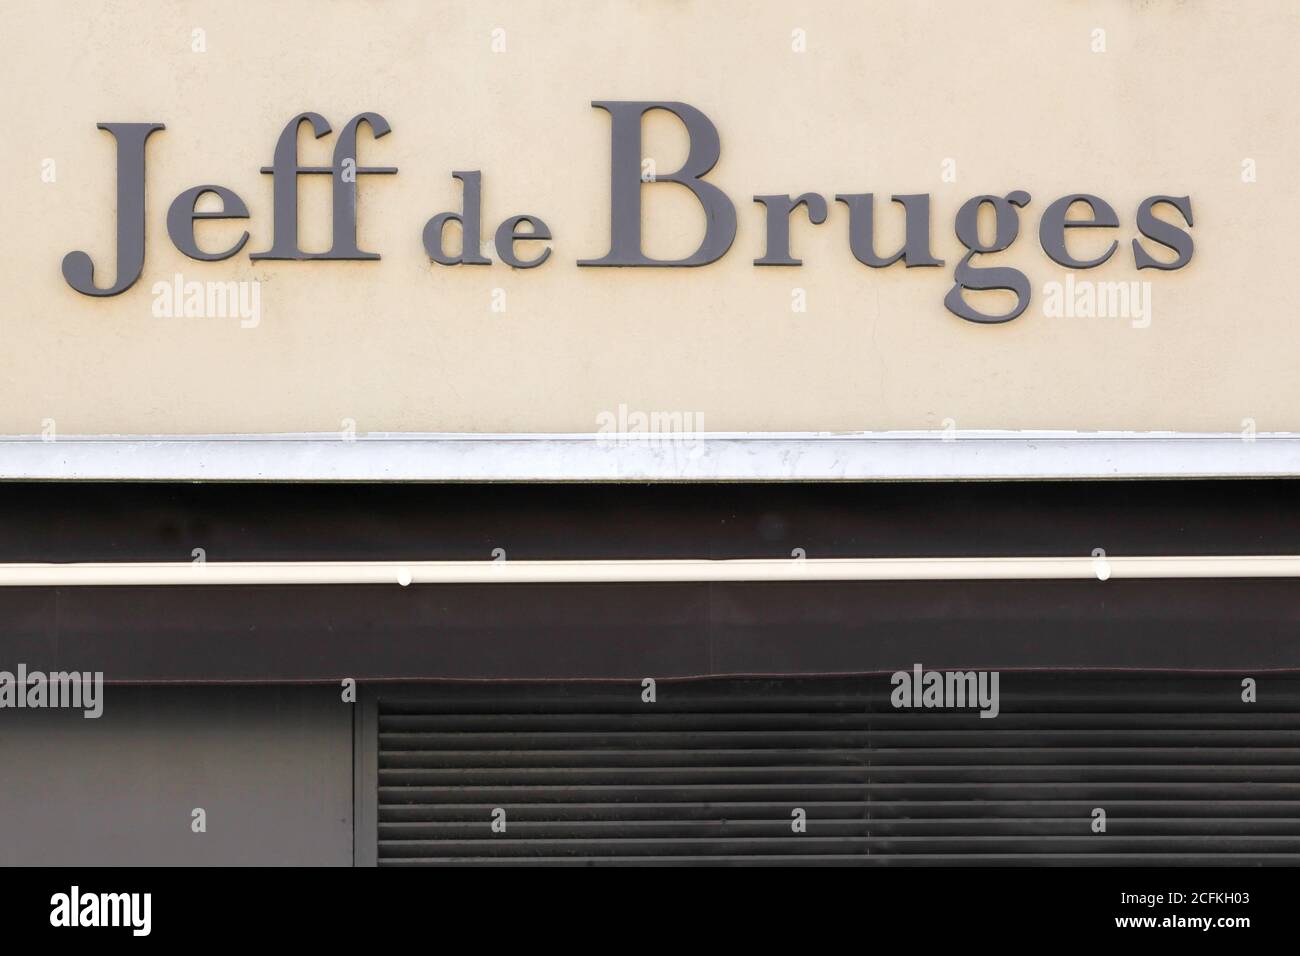 Villefranche sur Saone, France - 17 mai 2020 : Jeff de Bruges est une marque commerciale de confiserie Banque D'Images